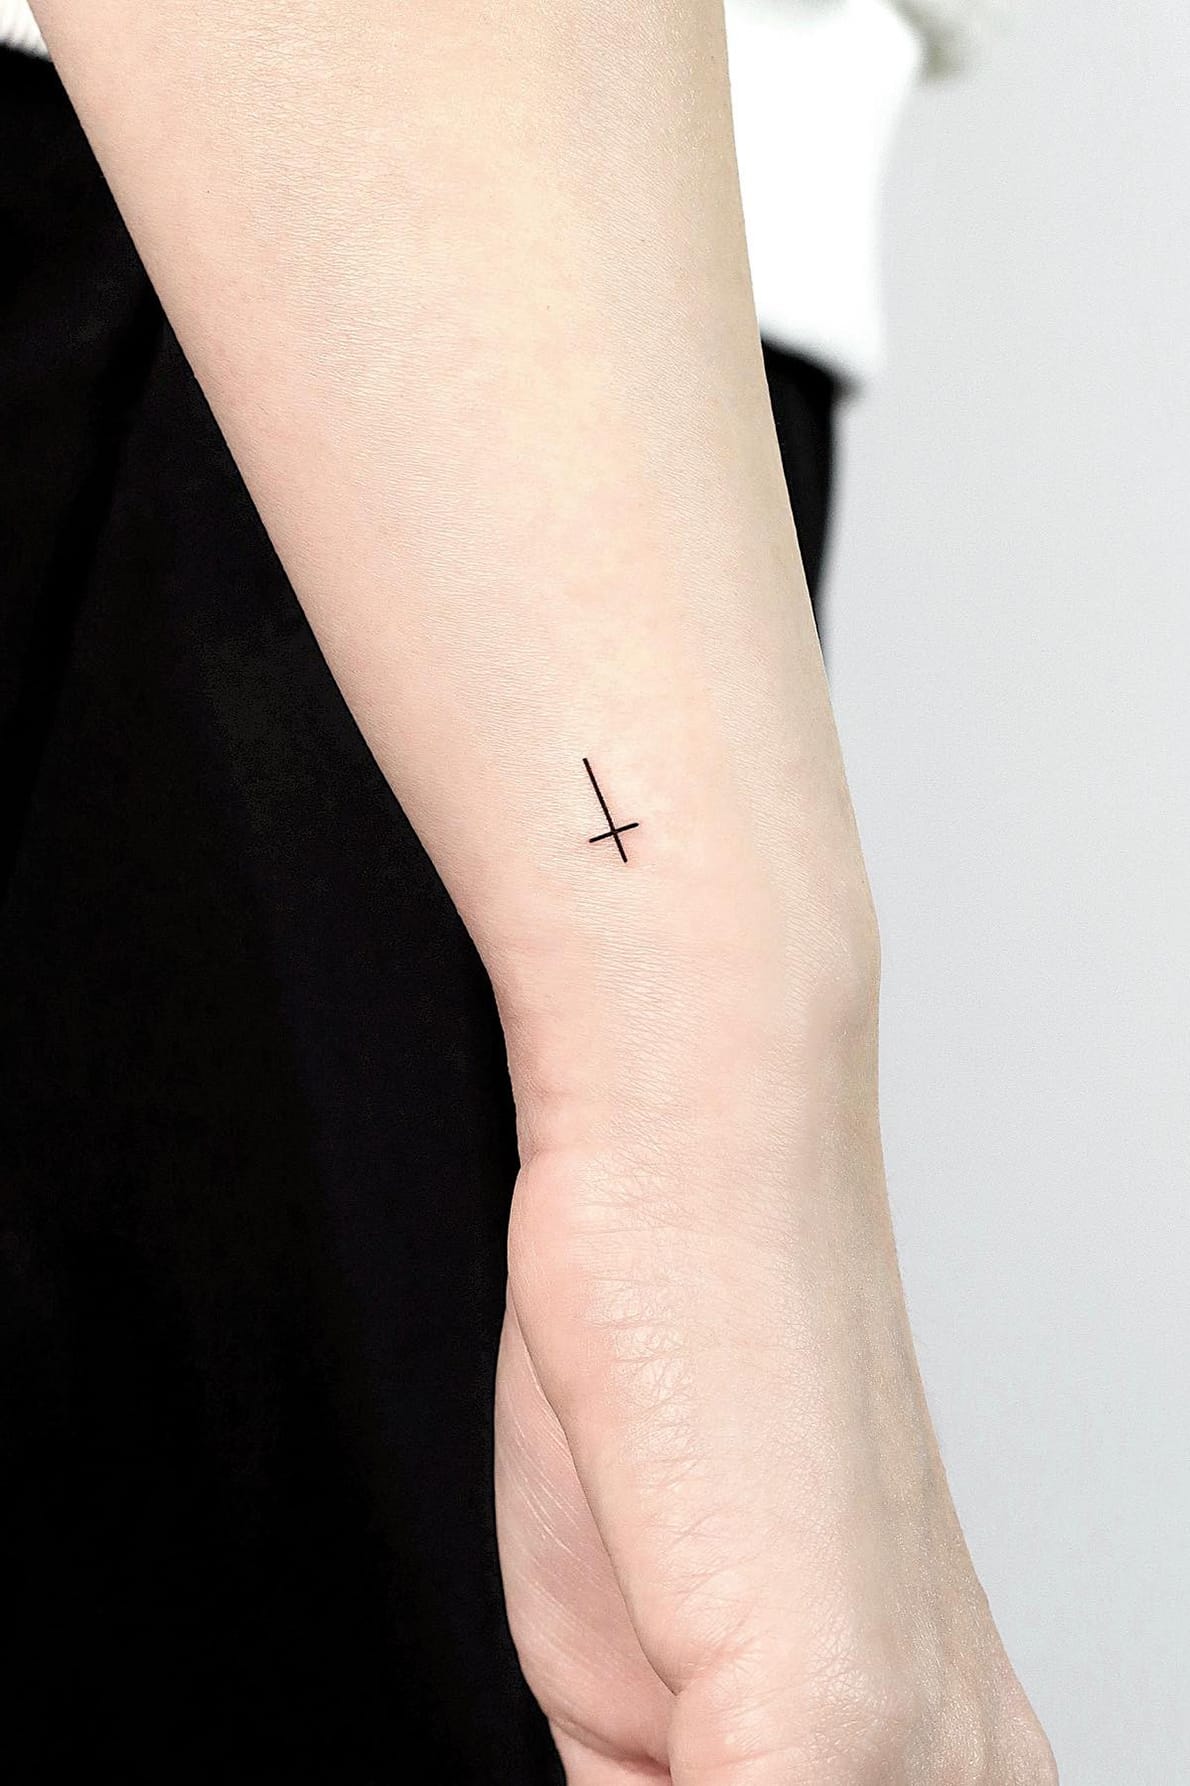 Small Upside Down Cross Tattoo